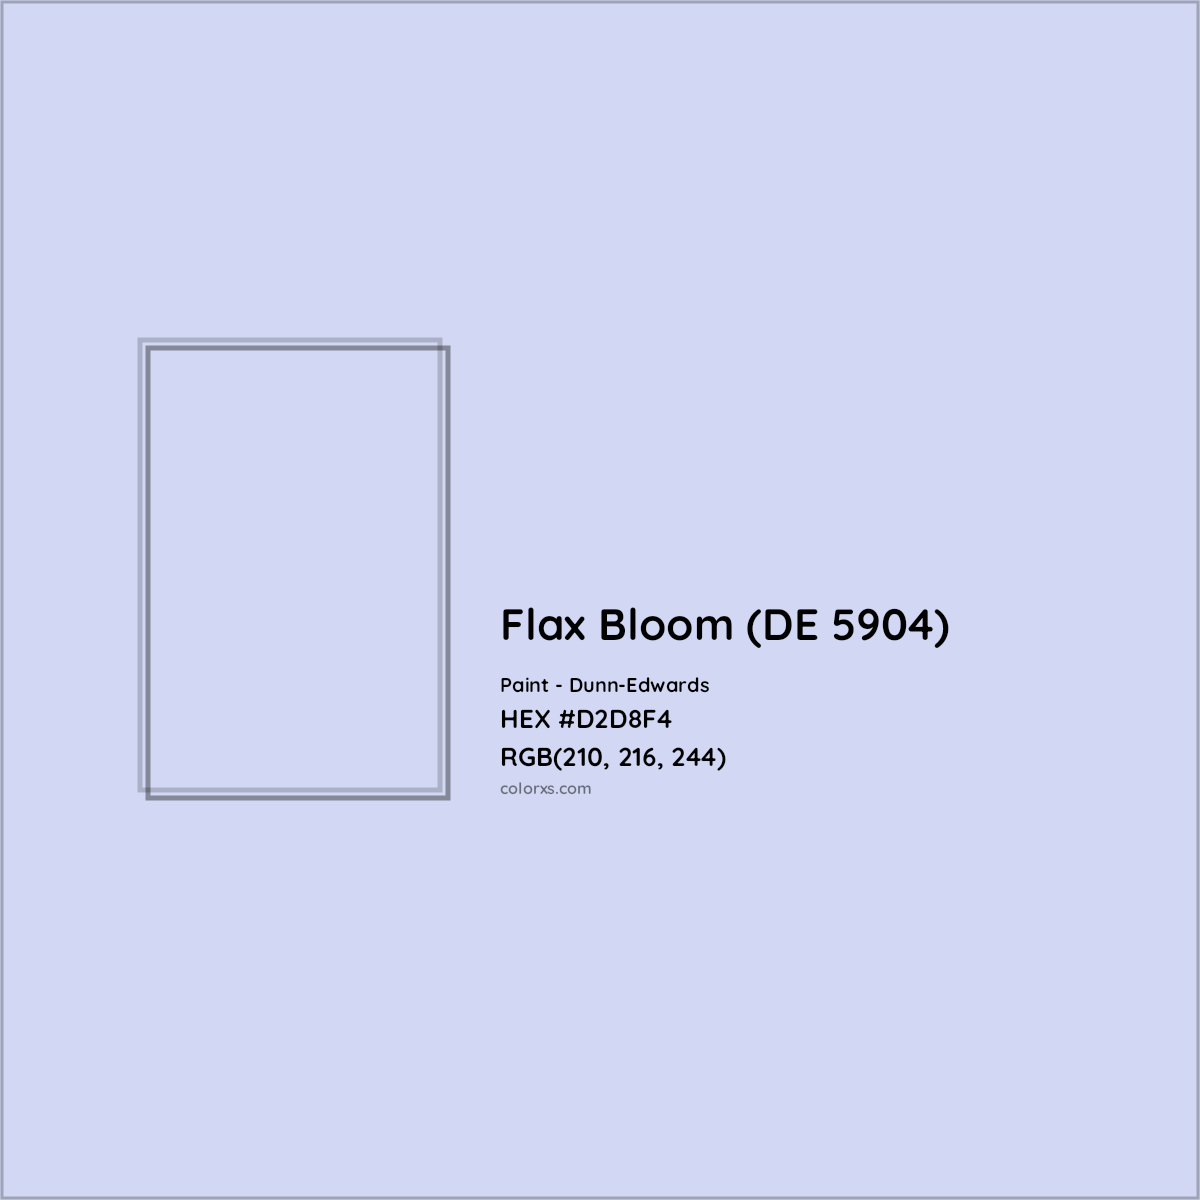 HEX #D2D8F4 Flax Bloom (DE 5904) Paint Dunn-Edwards - Color Code